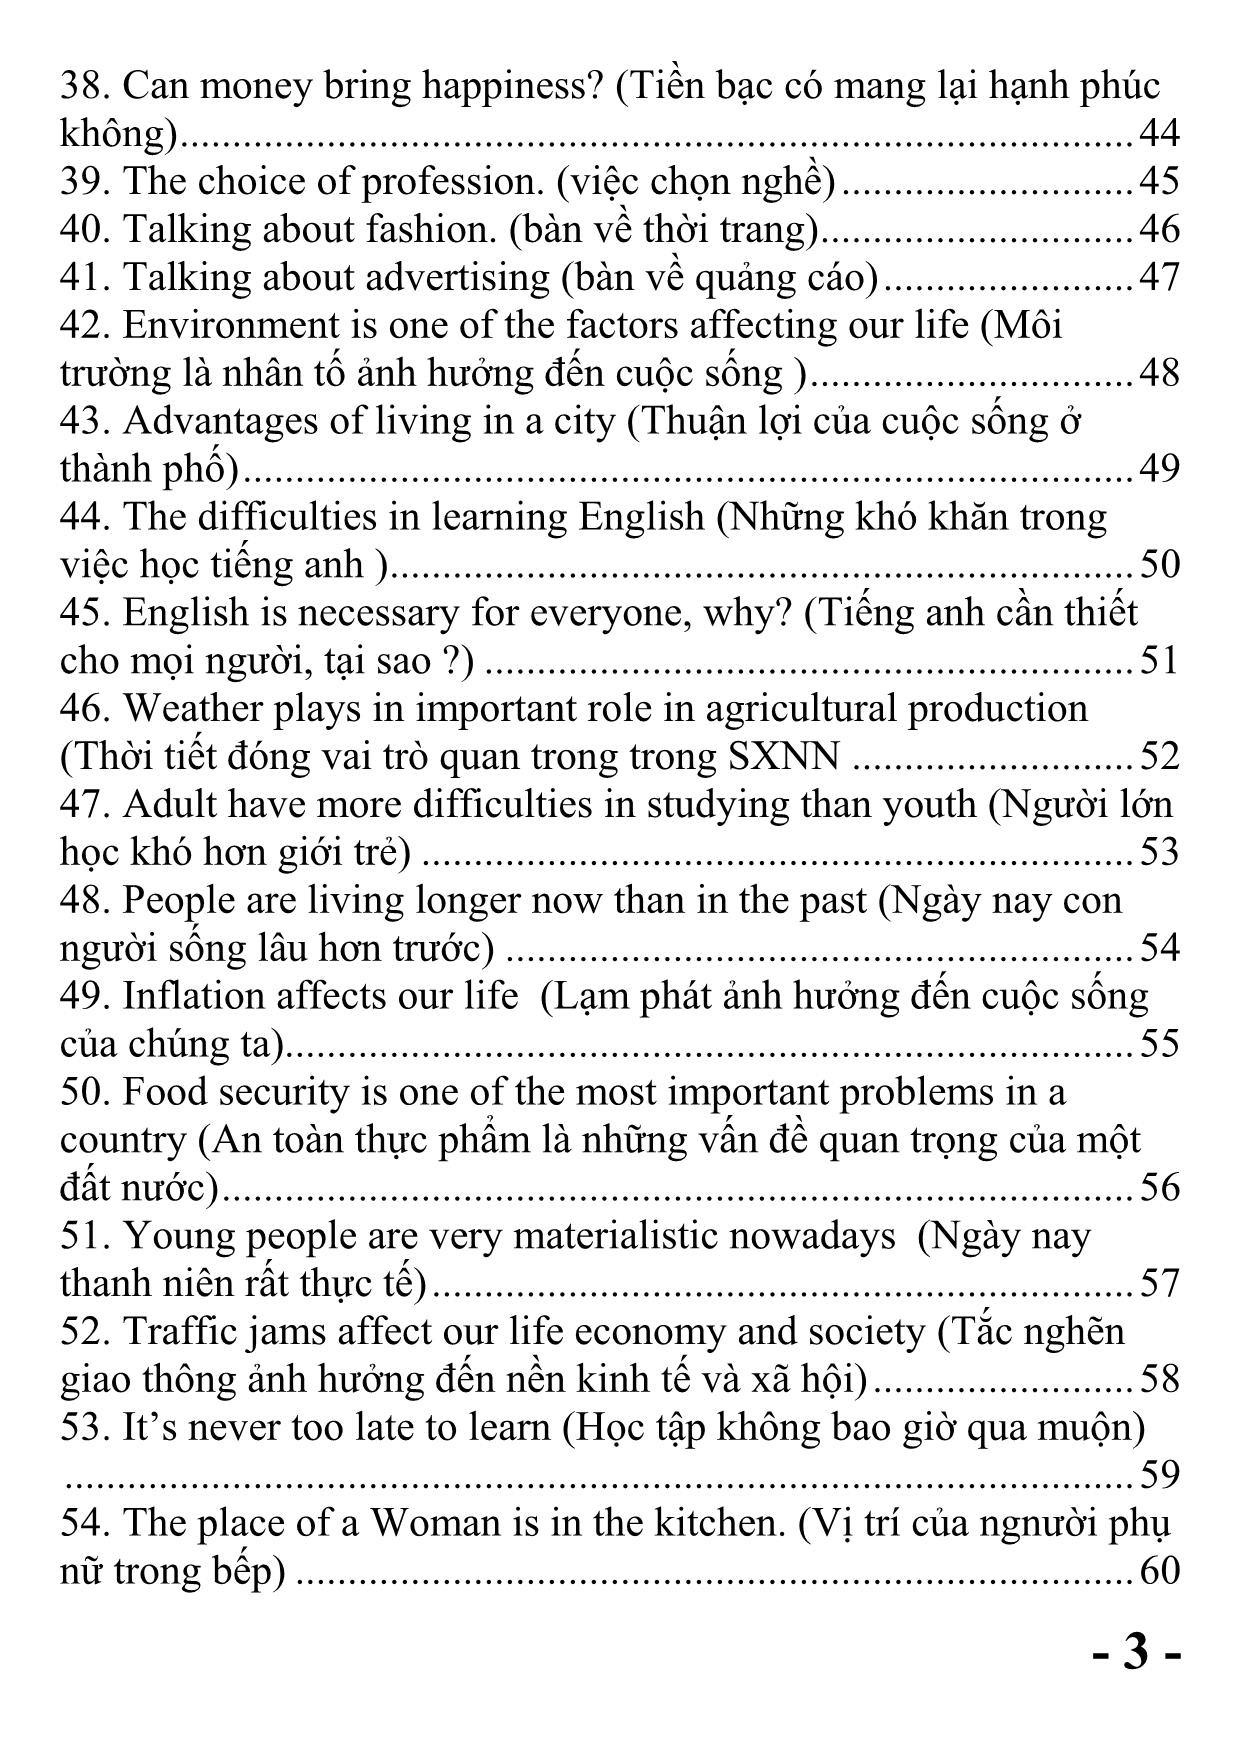 Bộ sưu tầm 122 bài luận Tiếng Anh hay sử dụng nhất trong các kỳ thi trang 3